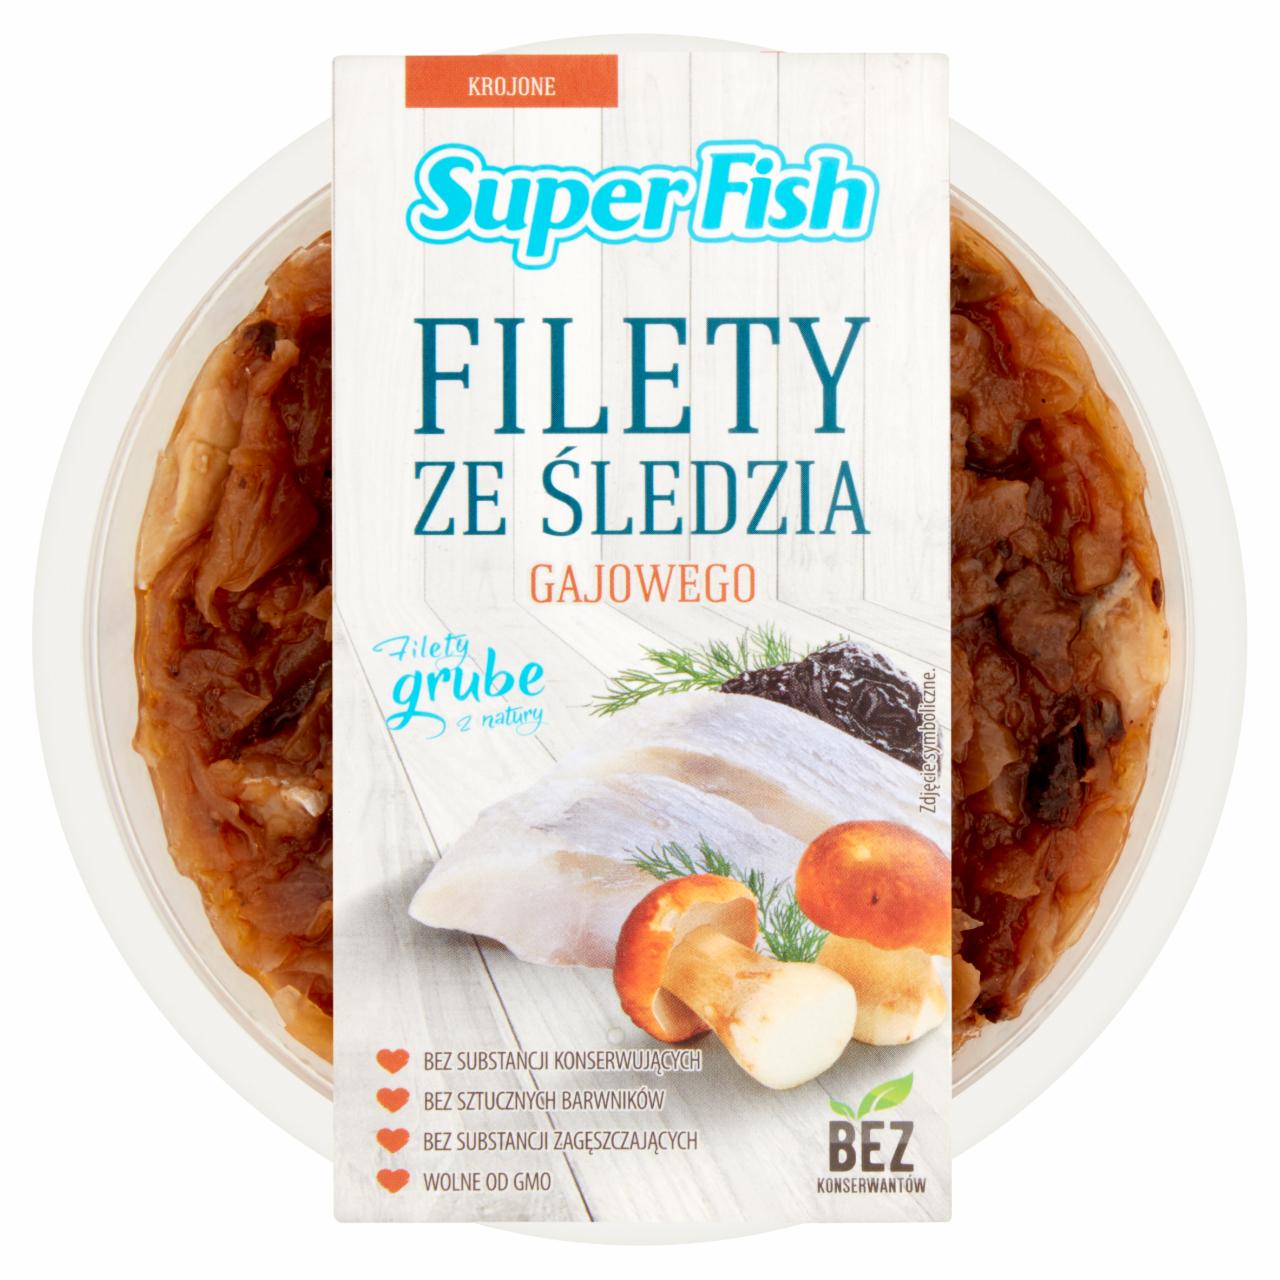 Zdjęcia - SuperFish Filety ze śledzia gajowego 180 g